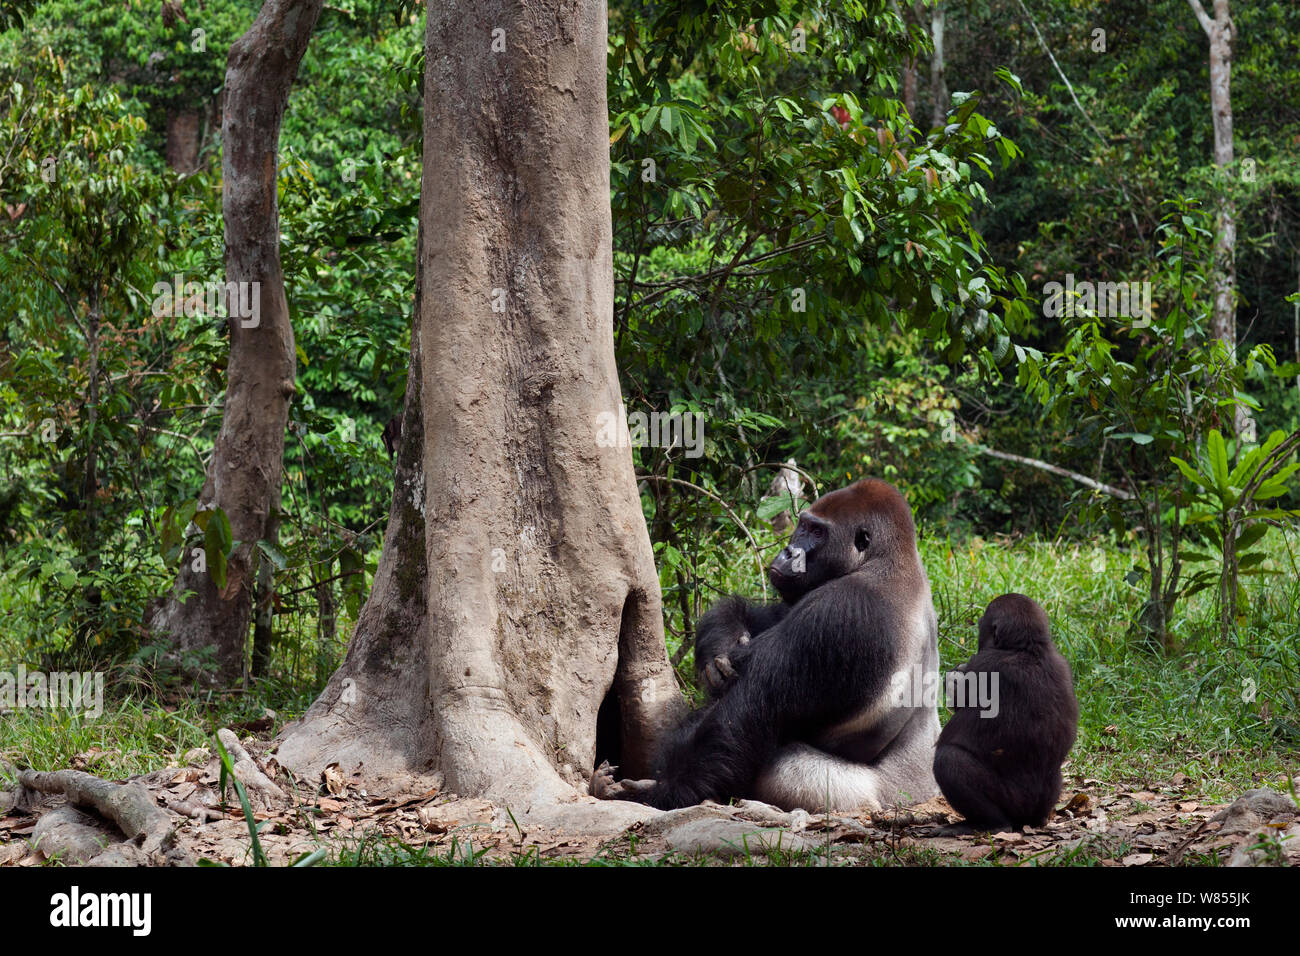 Gorille de plaine de l'ouest (Gorilla gorilla gorilla) mâle dominant silverback 'Makumba' âgé de 32 ans qui se nourrissent de bois pourri d'un arbre alors que son fils mineur "Tembo" âgés de 4 ans attend son tour, Bai Hokou, Spécial forêt dense de Dzanga Sangha, République centrafricaine. Décembre 2011. Banque D'Images